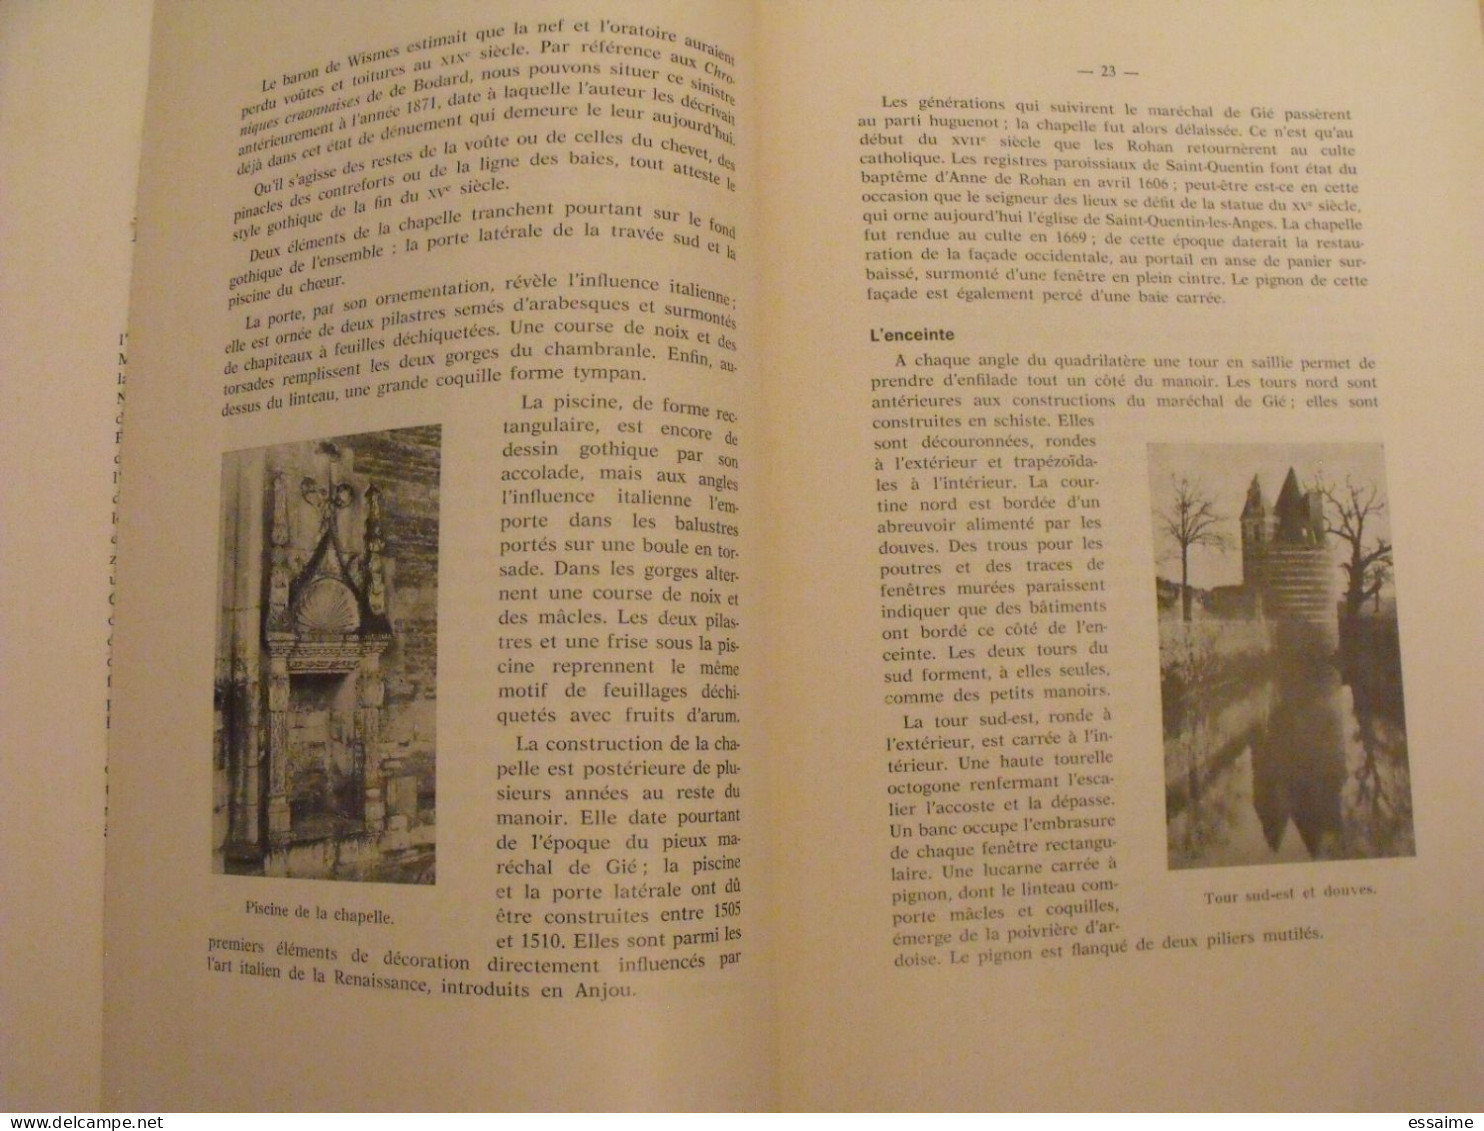 bulletin historique et archéologique de la Mayenne. 1968, n° 20 (240) . Laval Chateau-Gontier. Goupil.